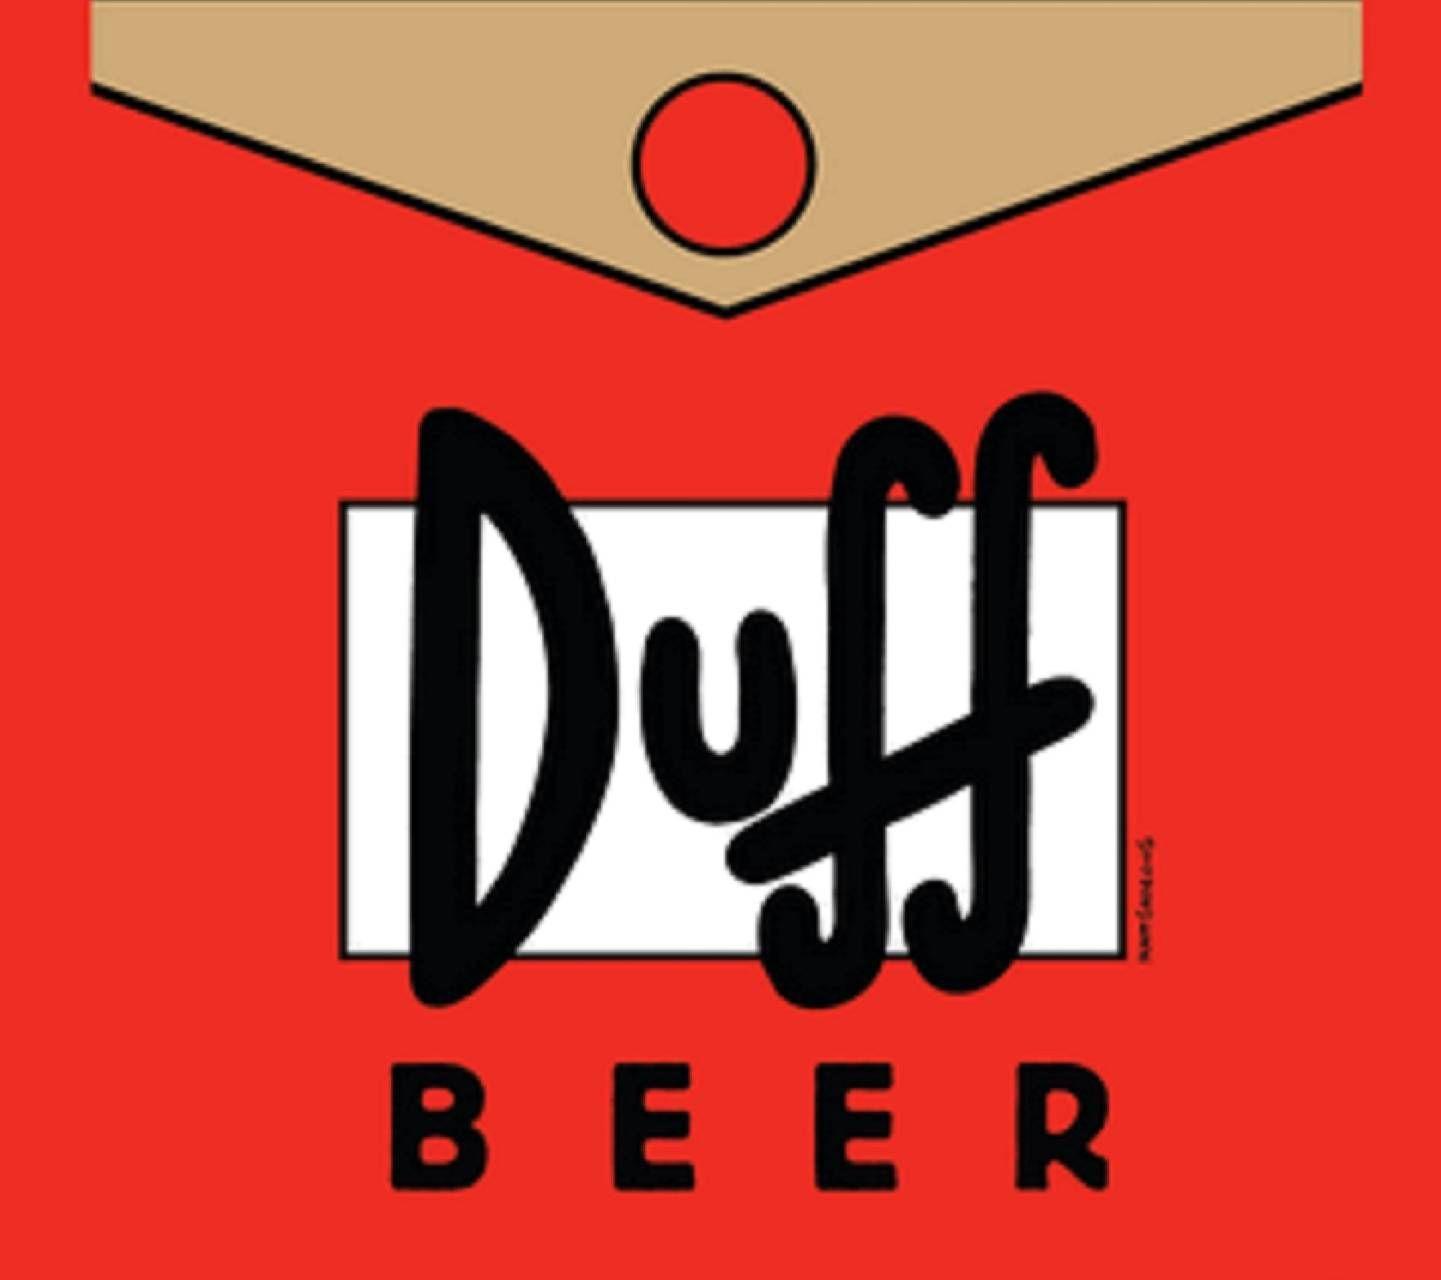 Duff Beer Wallpaper